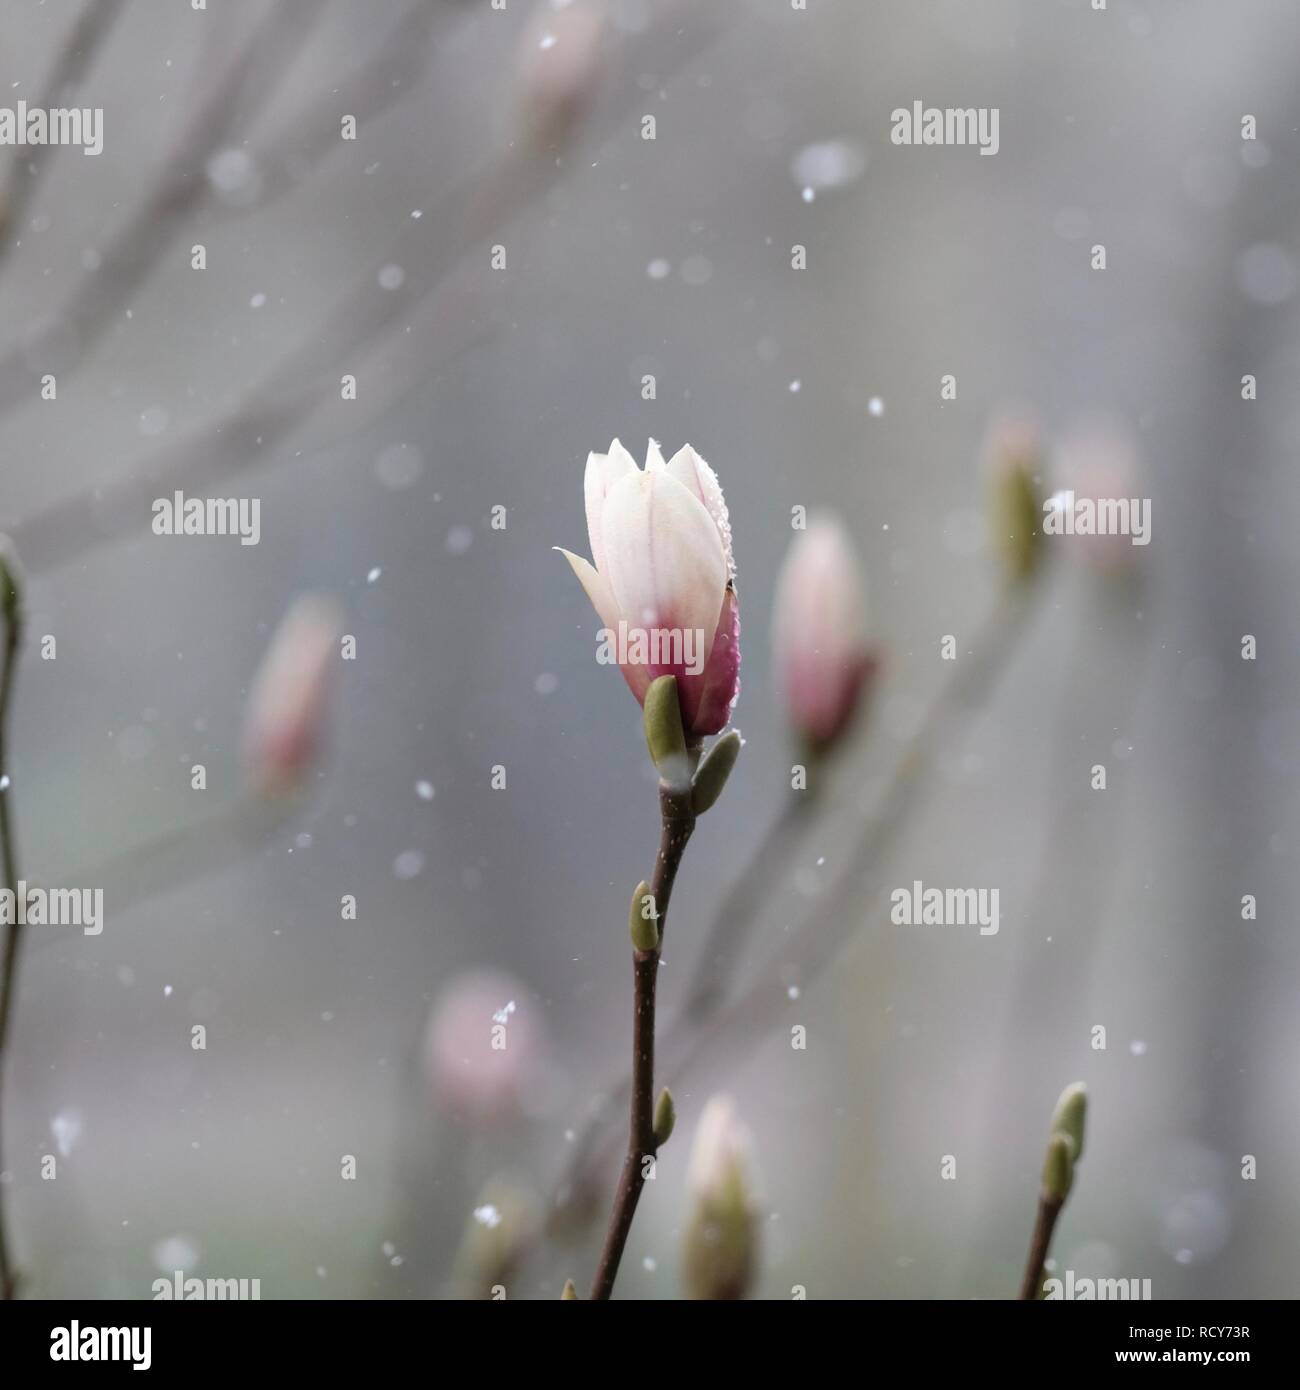 Nahaufnahme eines Magnolia bud in einem Schneegestöber. Grauen und rosafarbenen Pastelltönen. Geringe Tiefenschärfe. Stockfoto